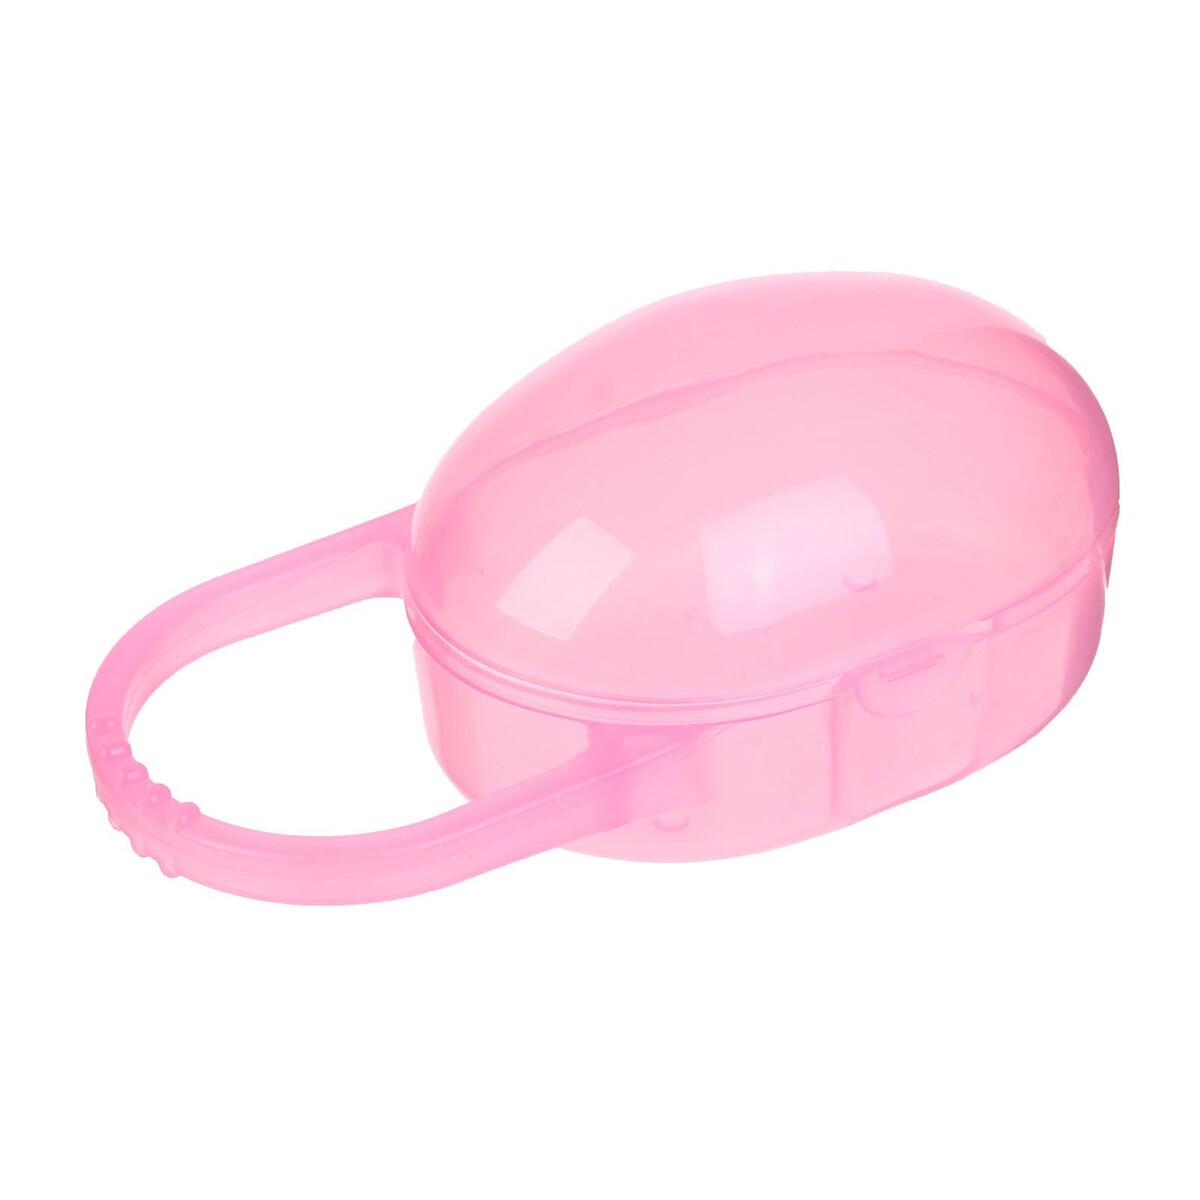 Контейнер для хранения и стерилизации детских сосок и пустышек, цвет розовый контейнер для сосок и пустышек мишка принц